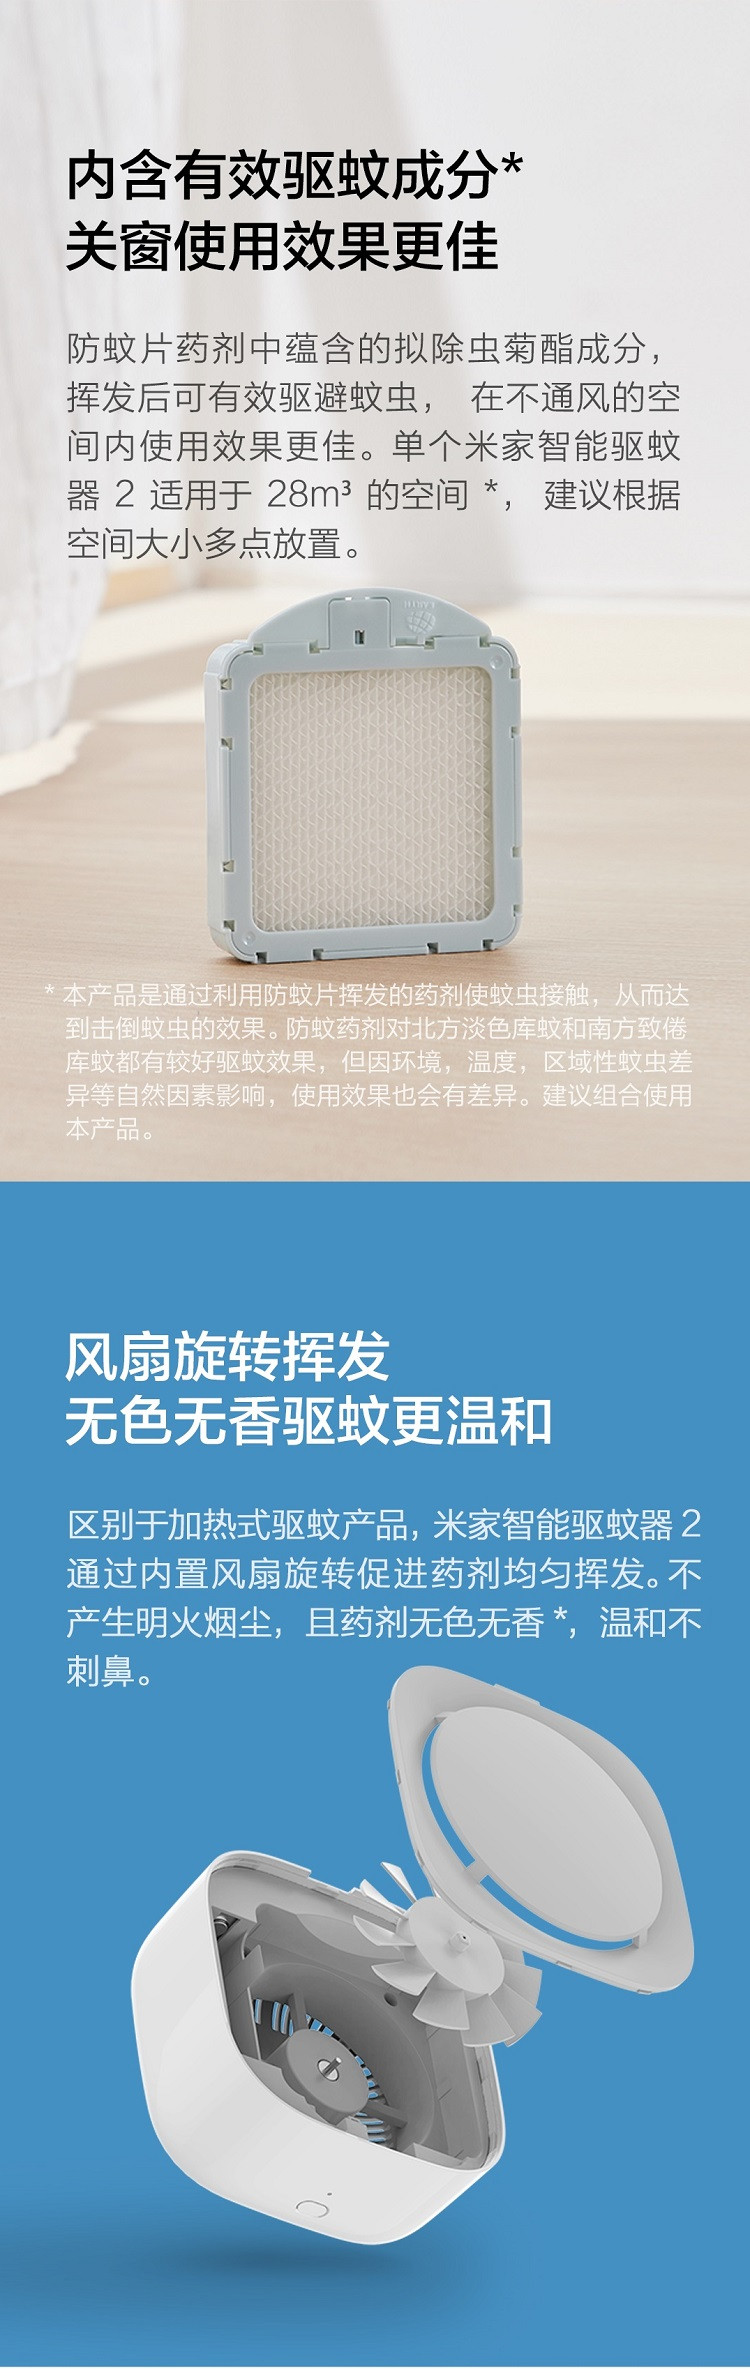 小米/MIUI 小米便携无烟驱蚊器2 长效防蚊 家用室内婴儿电蚊香 智能版2